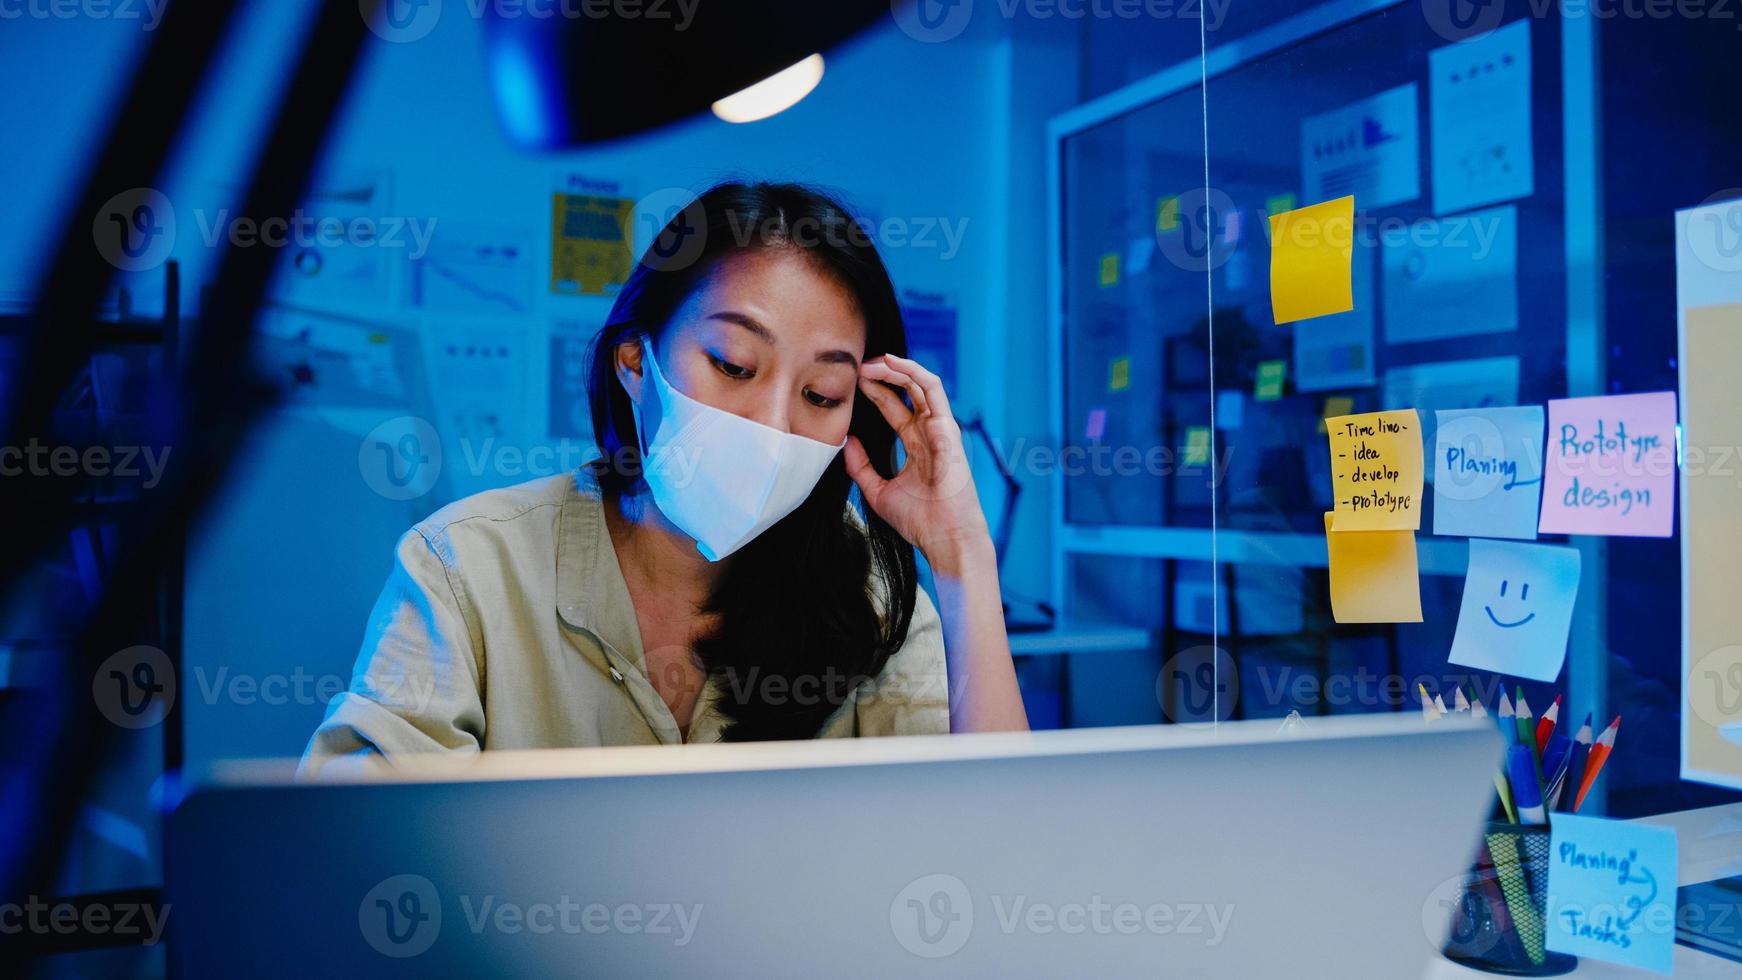 frilansande asiatiska kvinnor bär ansiktsmask med hjälp av laptop hårt arbete på nytt vanligt kontor. arbeta hemifrån överbelastning på natten, självisolering, social distansering, karantän för förebyggande av coronavirus. foto